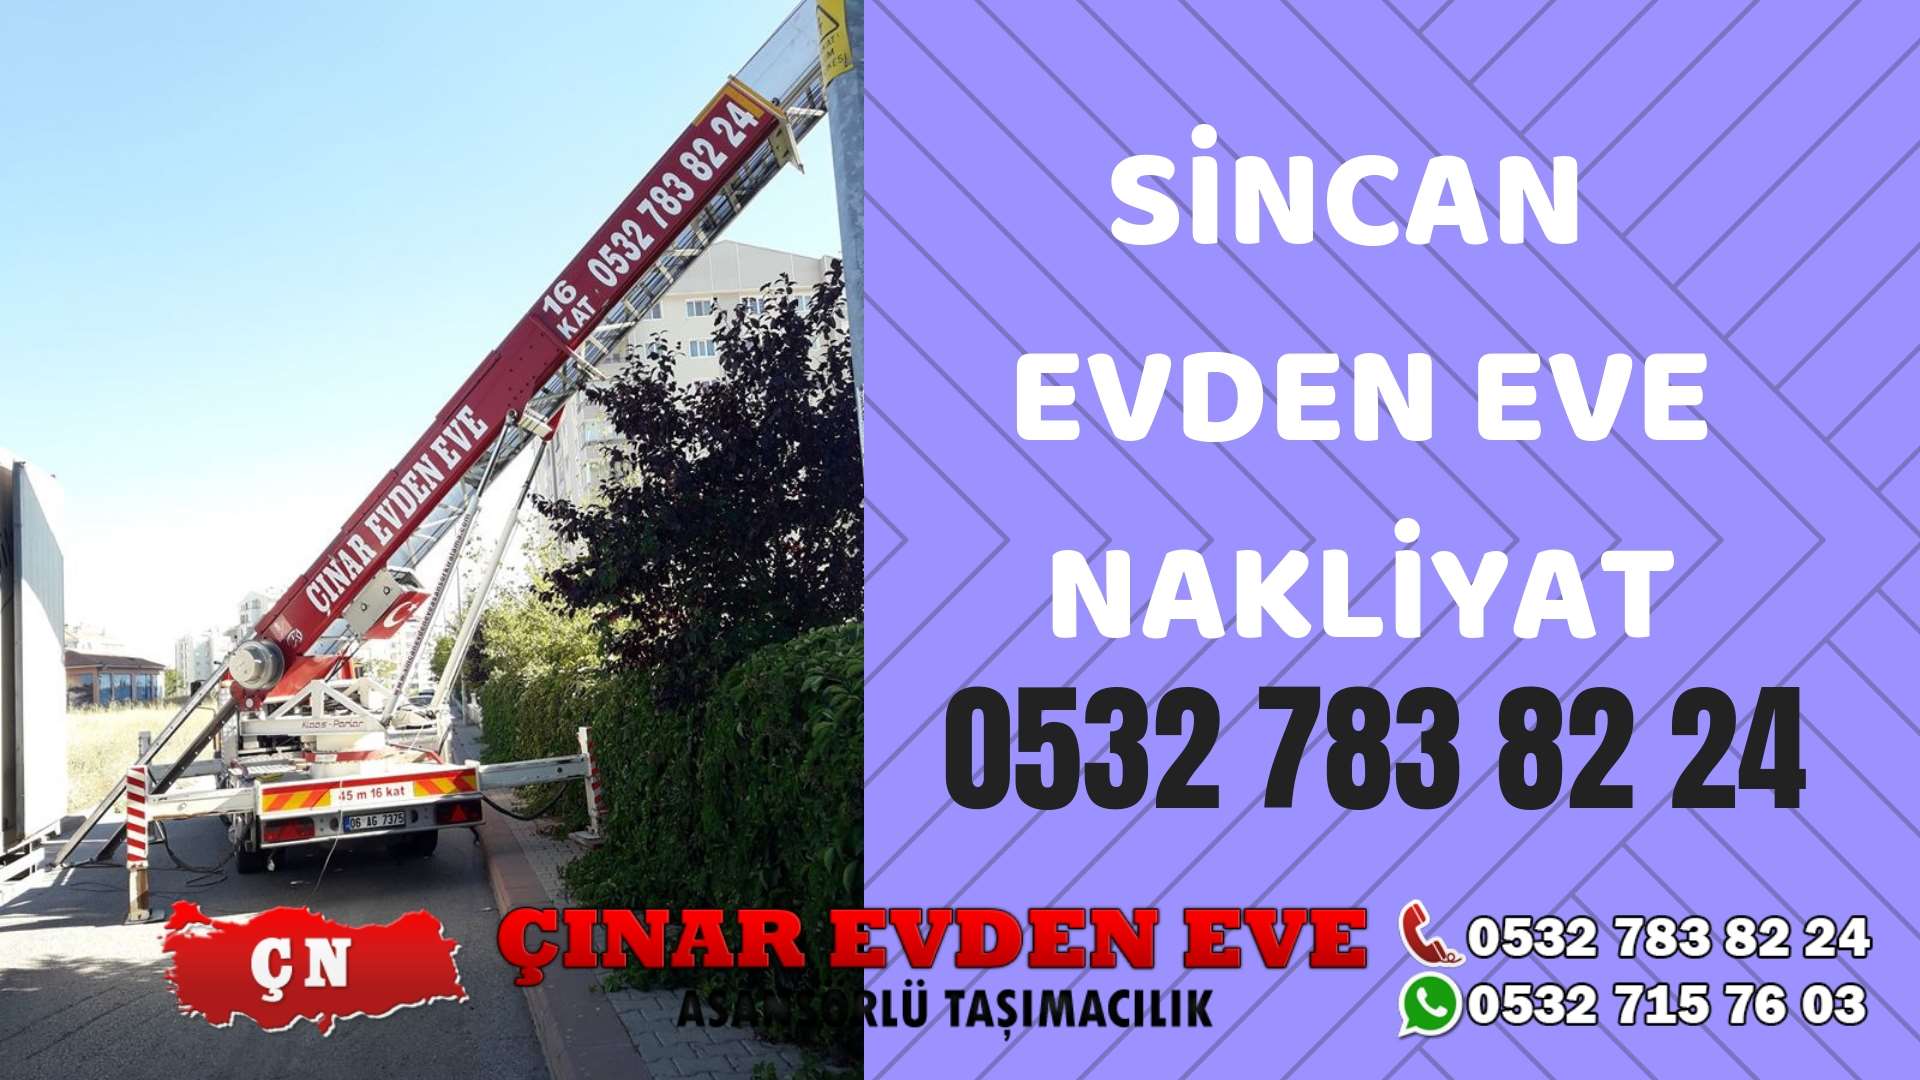 Ankara Keçiören Sincan evden eve asansörlü nakliyat en ucuz nakliye 0532 715 76 03